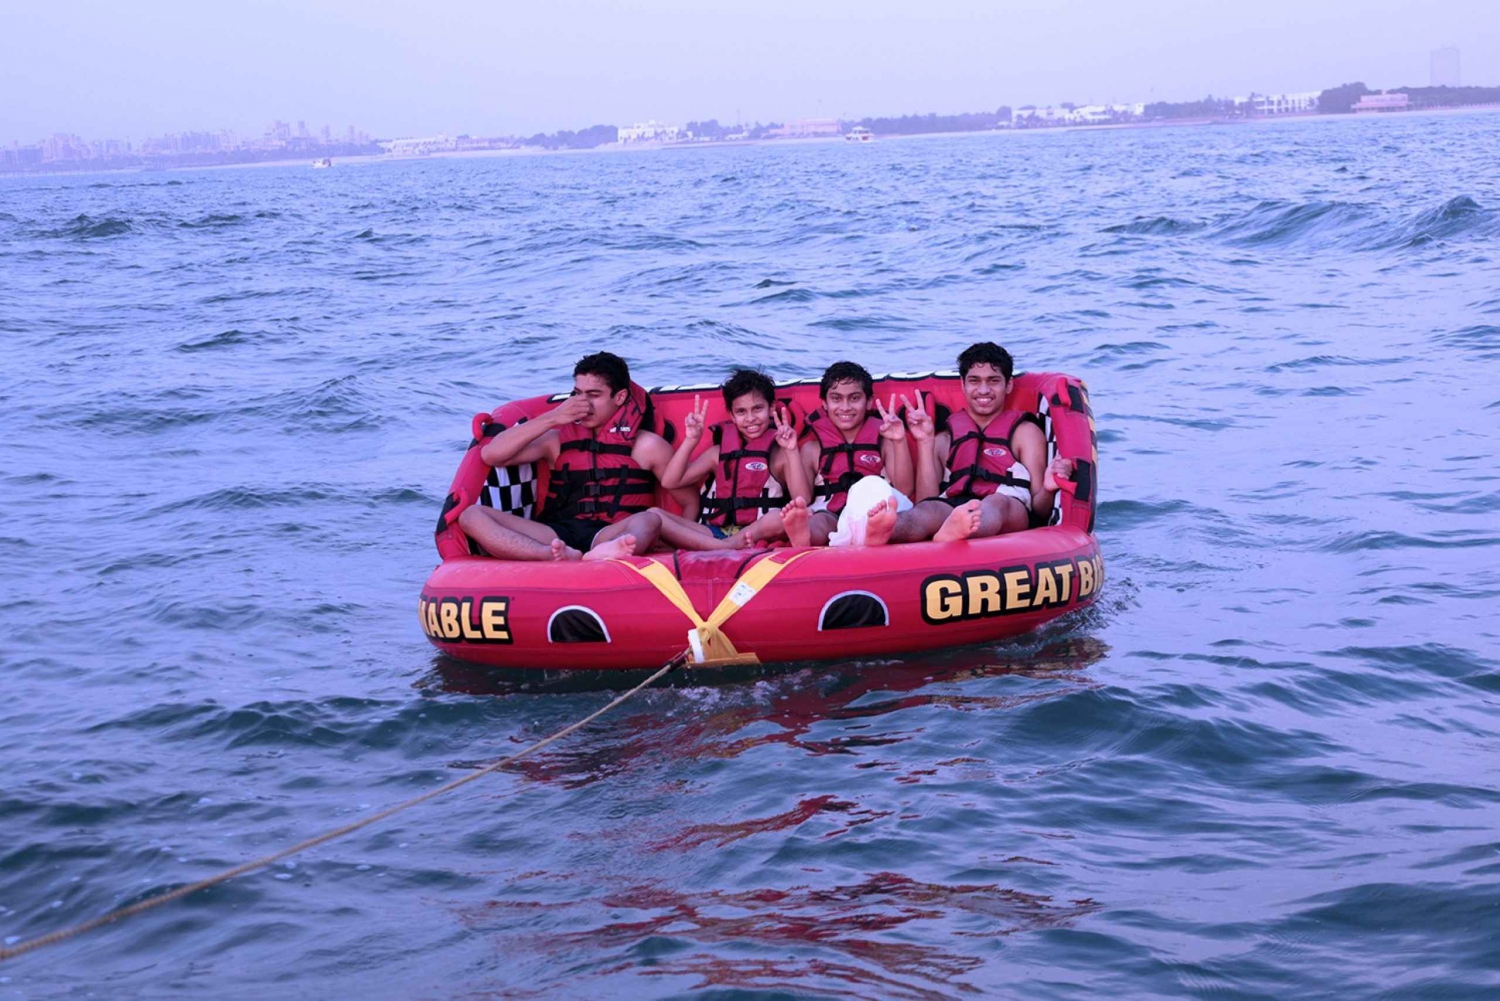 Dubai: Eksklusiv 15 minutters donut-bådtur for en gruppe